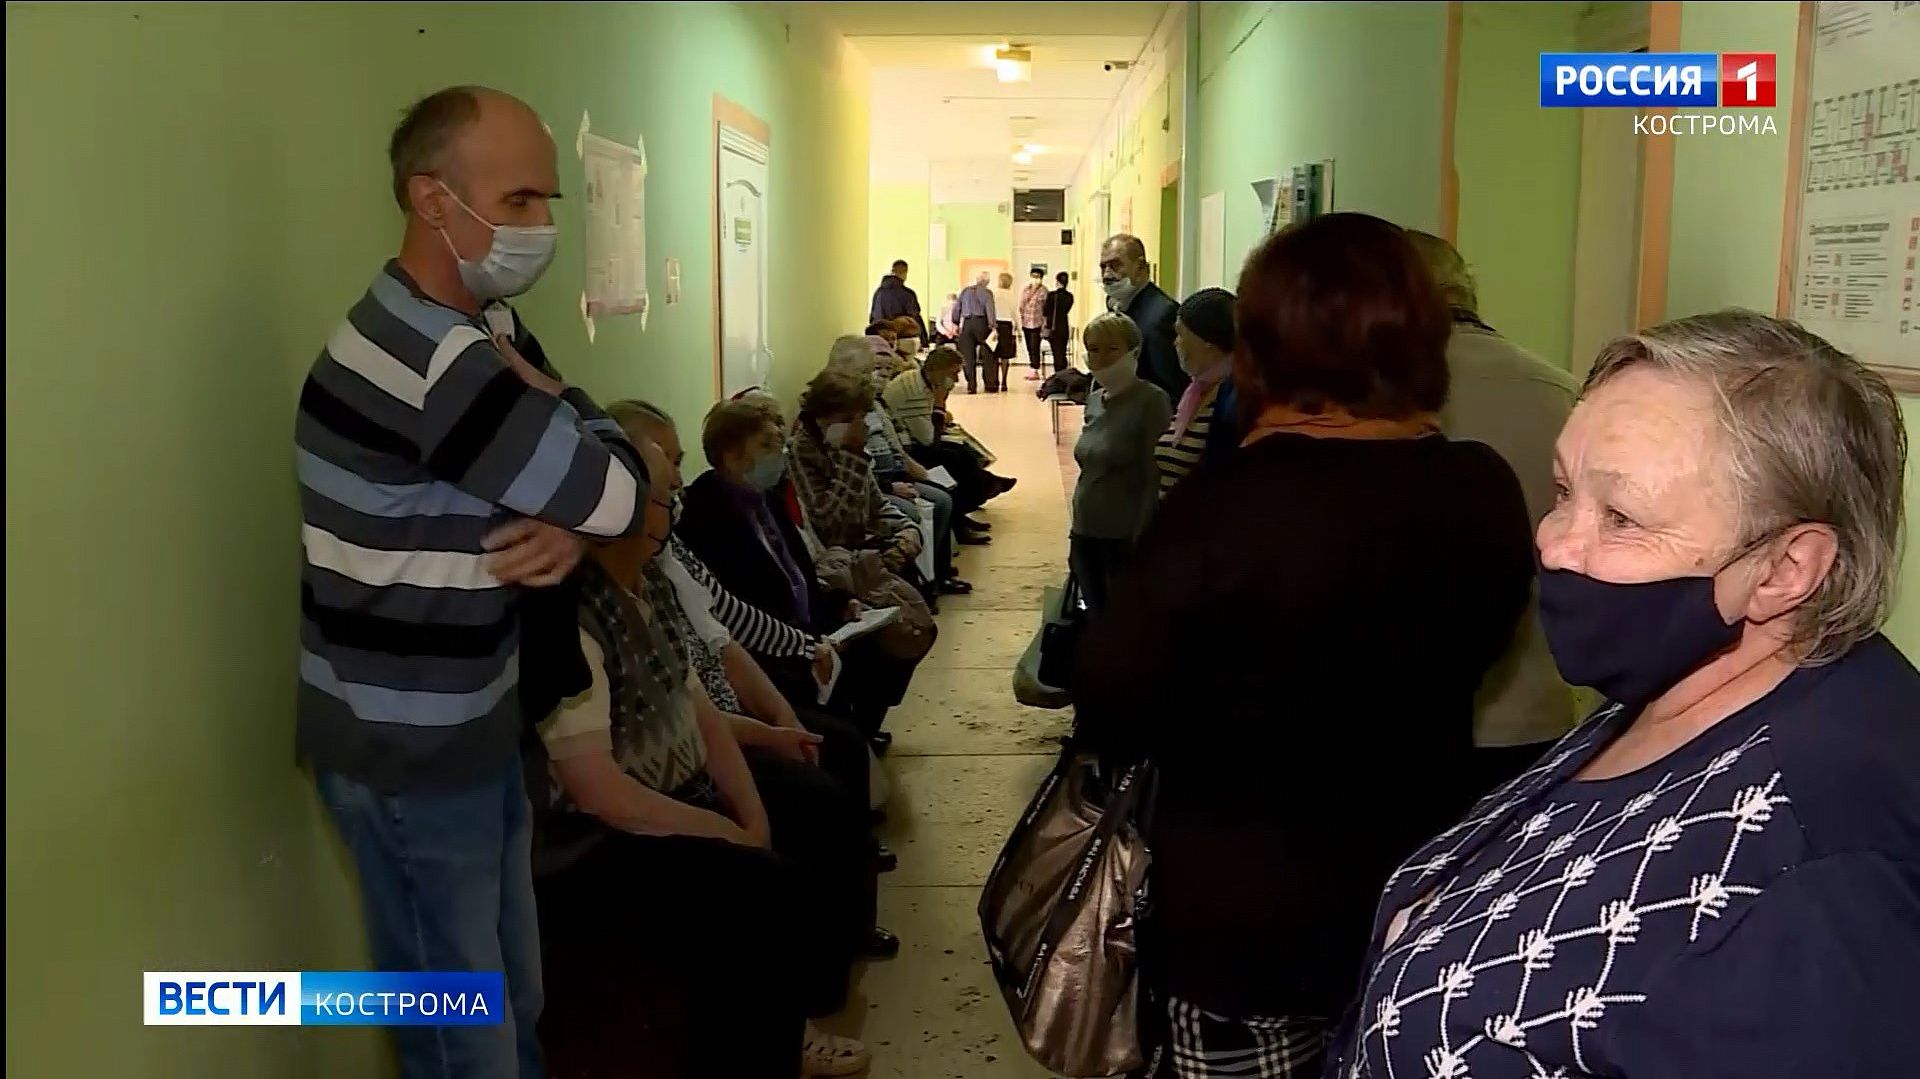 Поликлиники Костромы захлебываются в вызовах пациентов